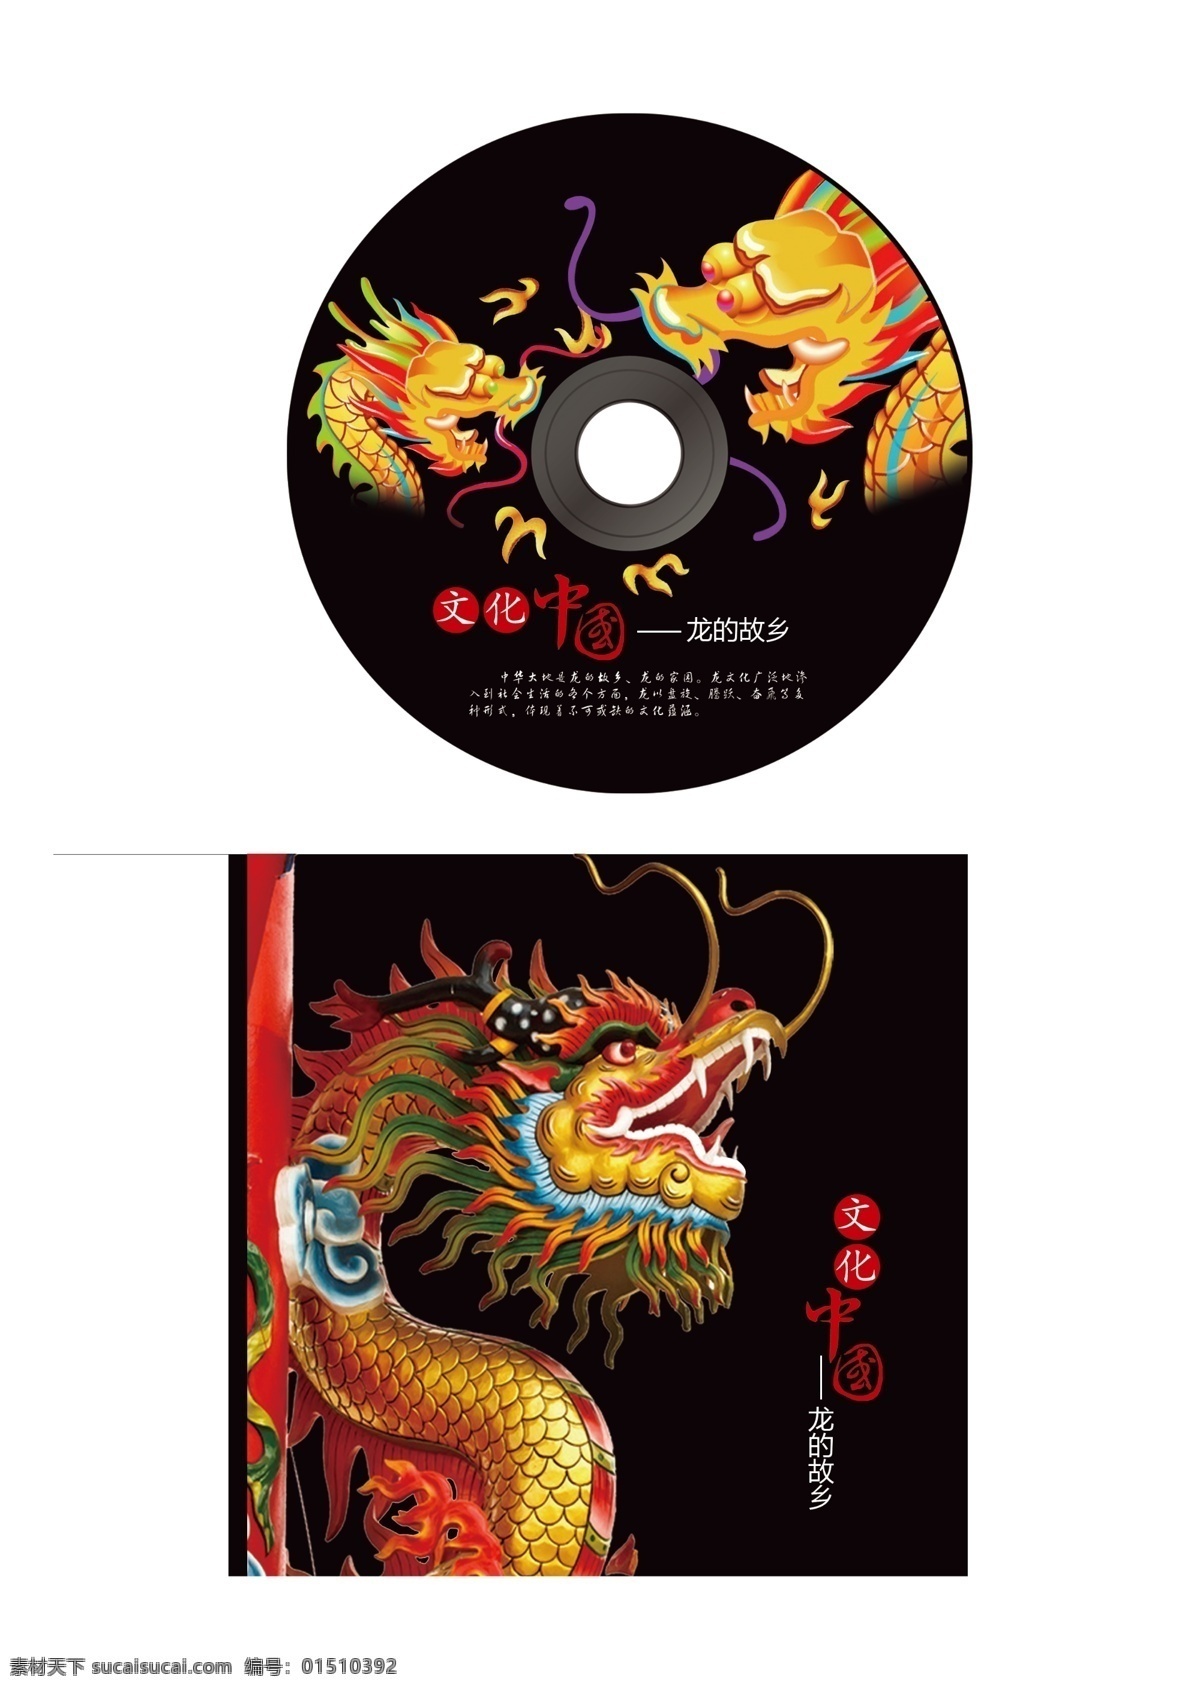 中国龙文化 光碟 盘面包装 盒子